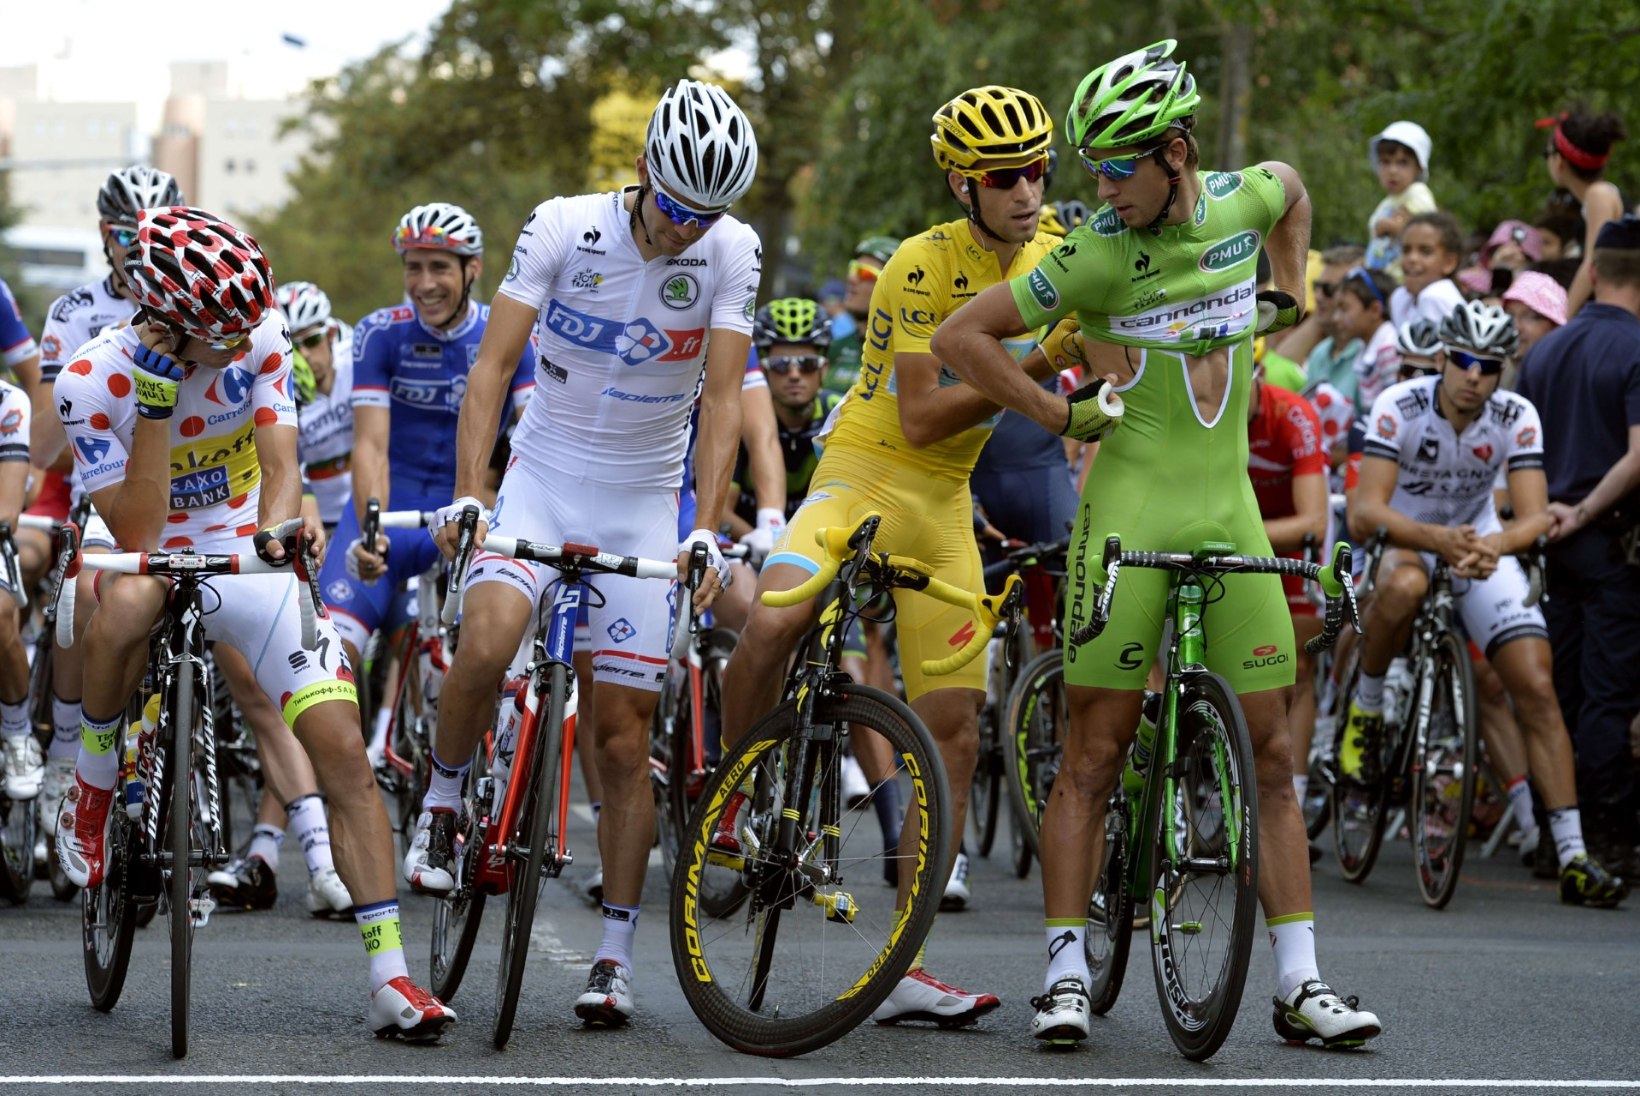 FOTOD: Tour de France lõppes uhke sprindifinišiga, Nibali võis juua võidušampanjat